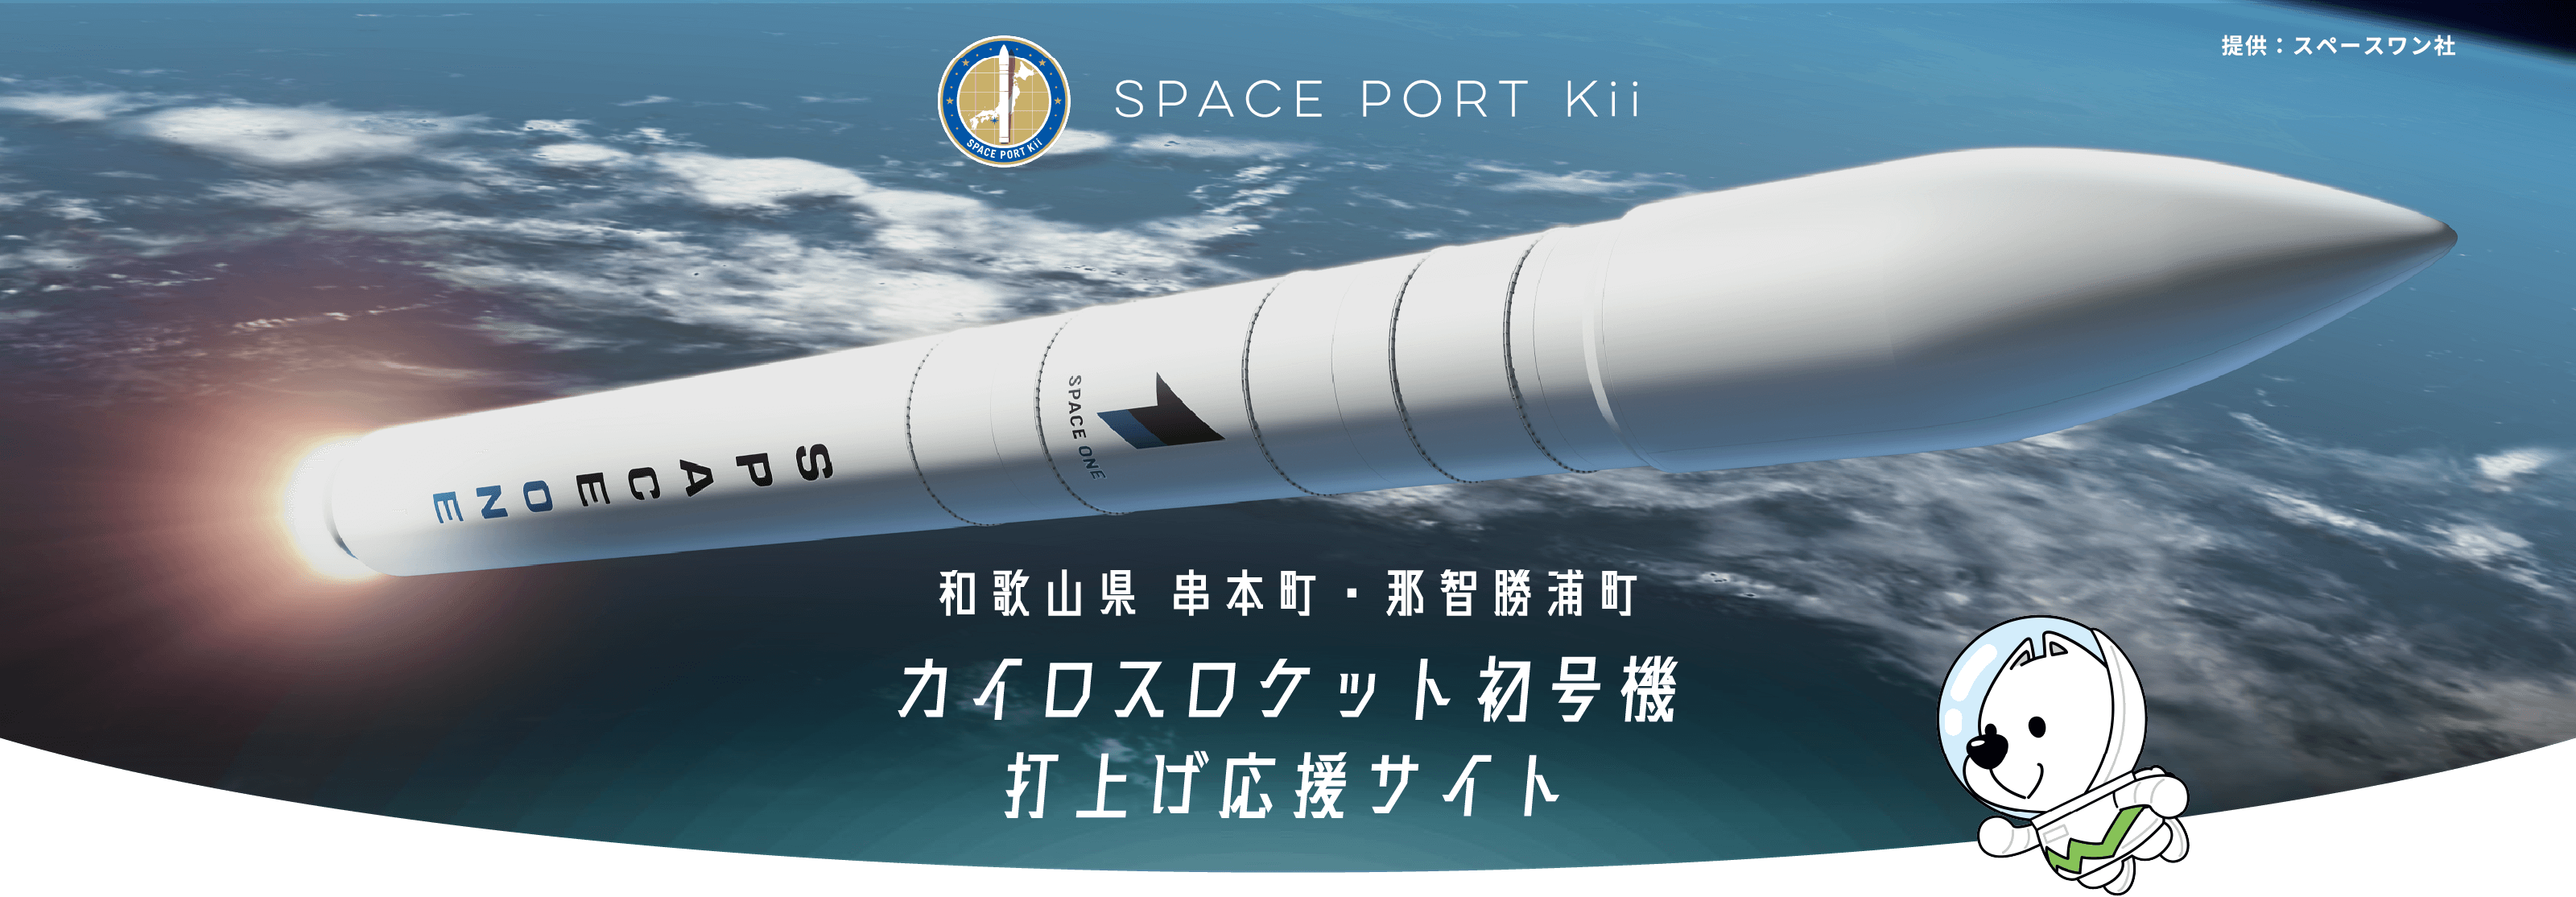 和歌山県 串本町・那智勝浦町 ロケット「カイロス」初号機打ち上げ応援サイト SPACE PORT Kii 提供：スペースワン社